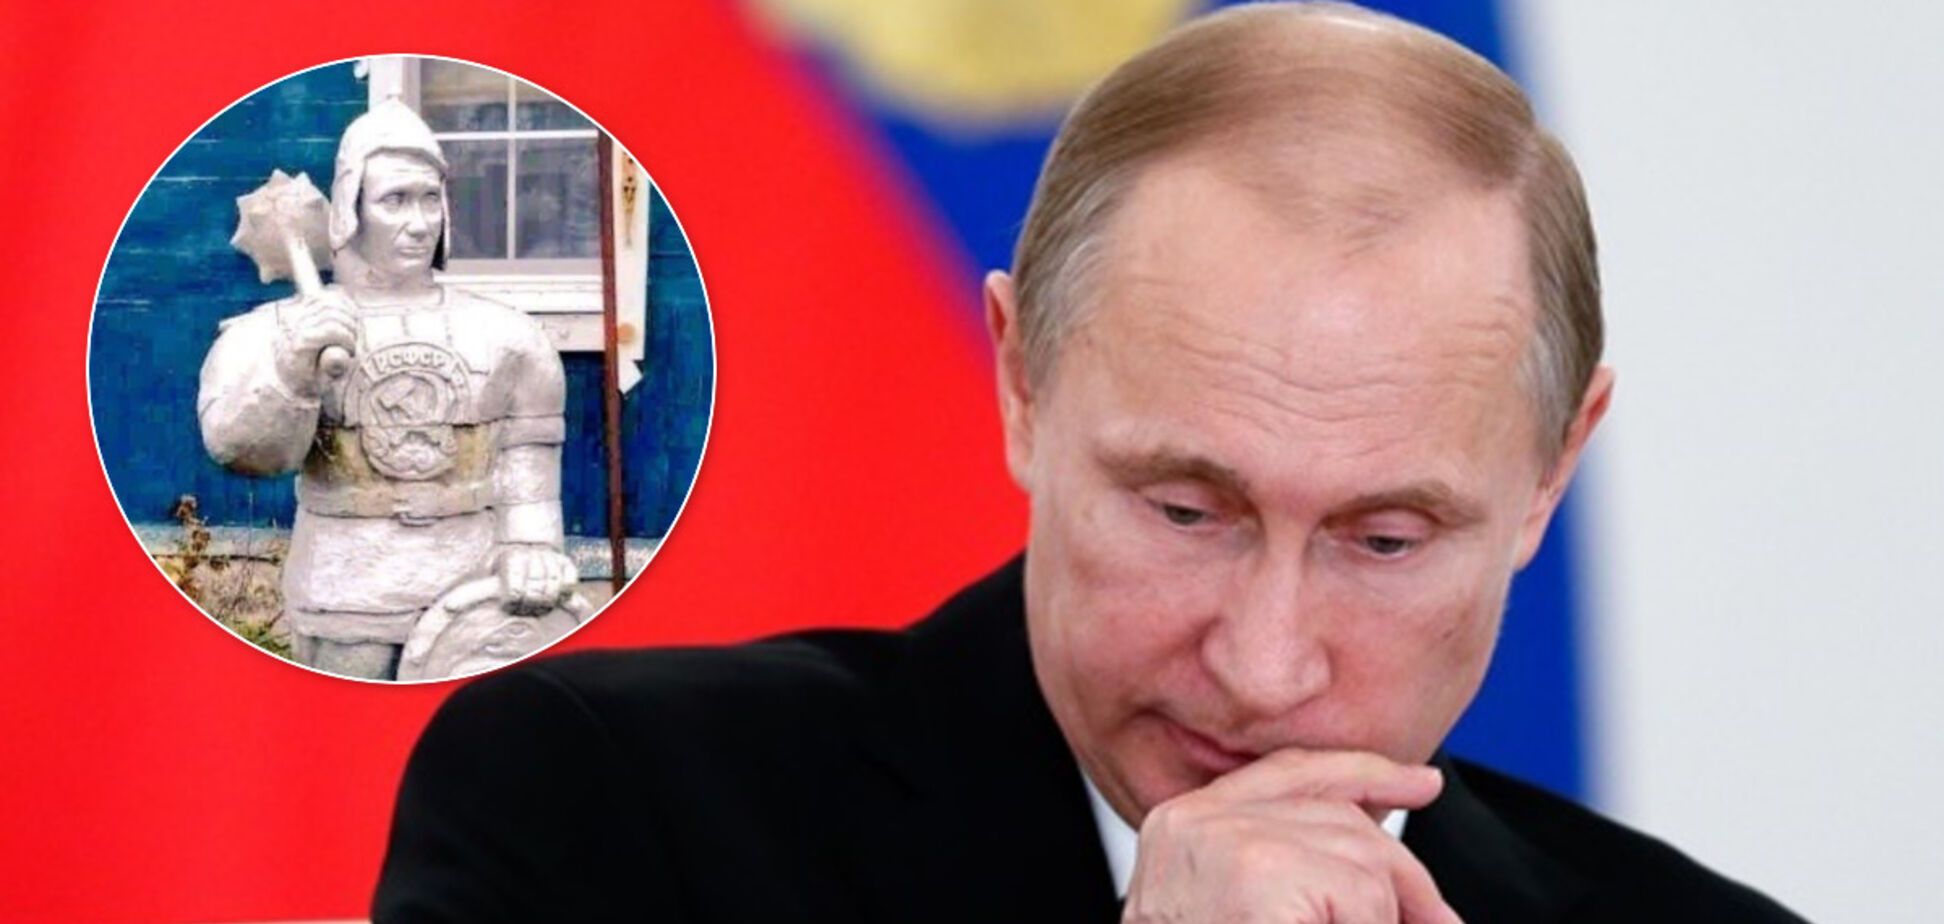 Путин соврал, что Россия 'справилась' с печенегами: сеть заполнили фотожабы